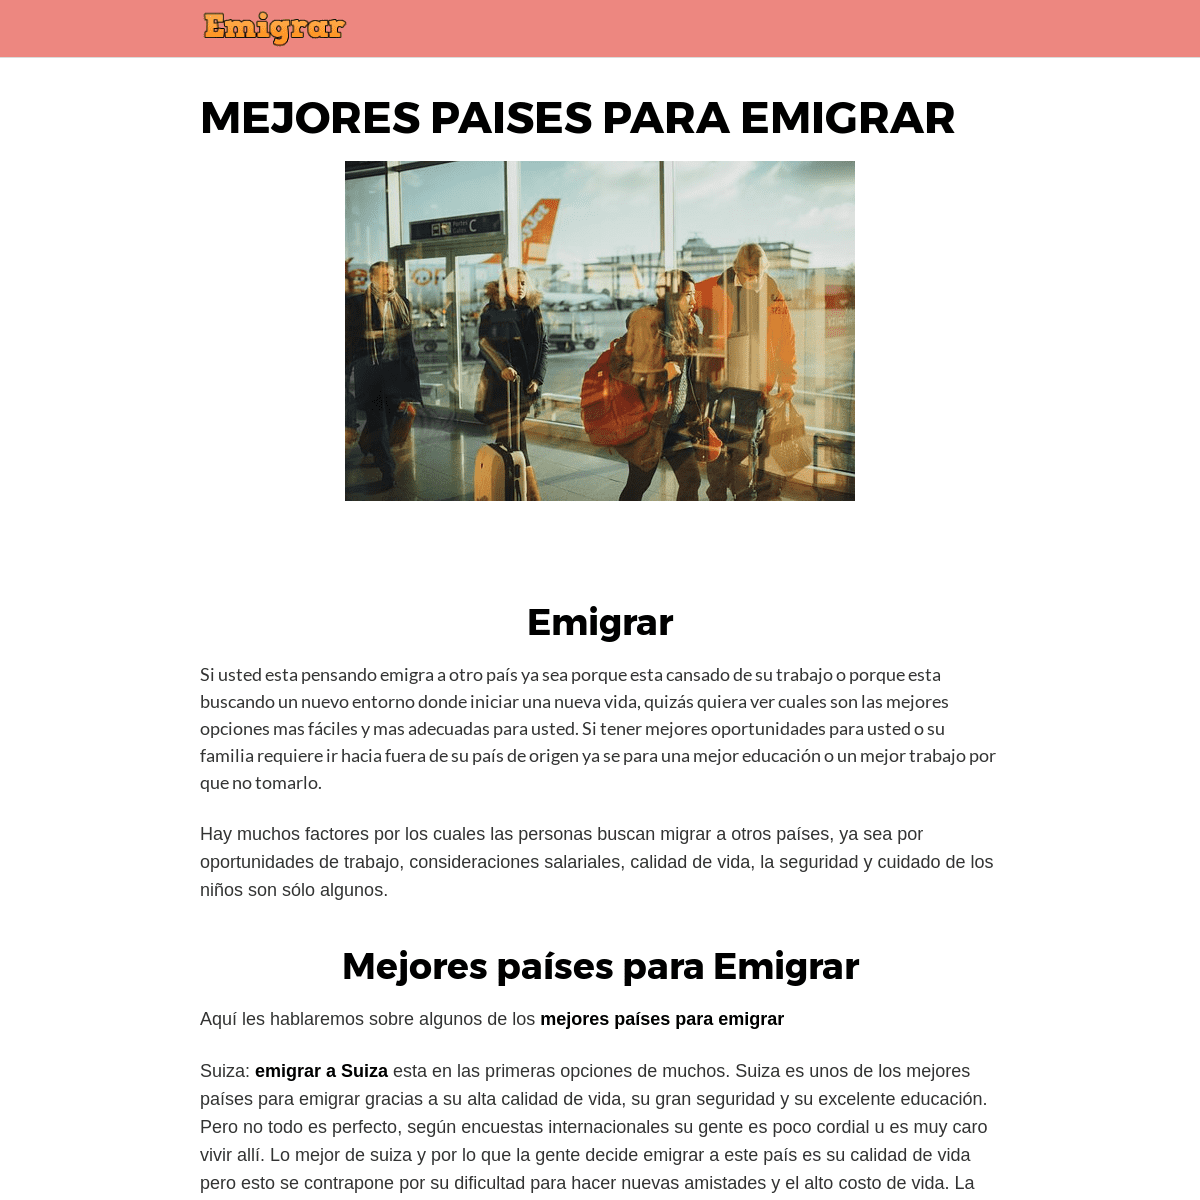 A complete backup of emigrara.com